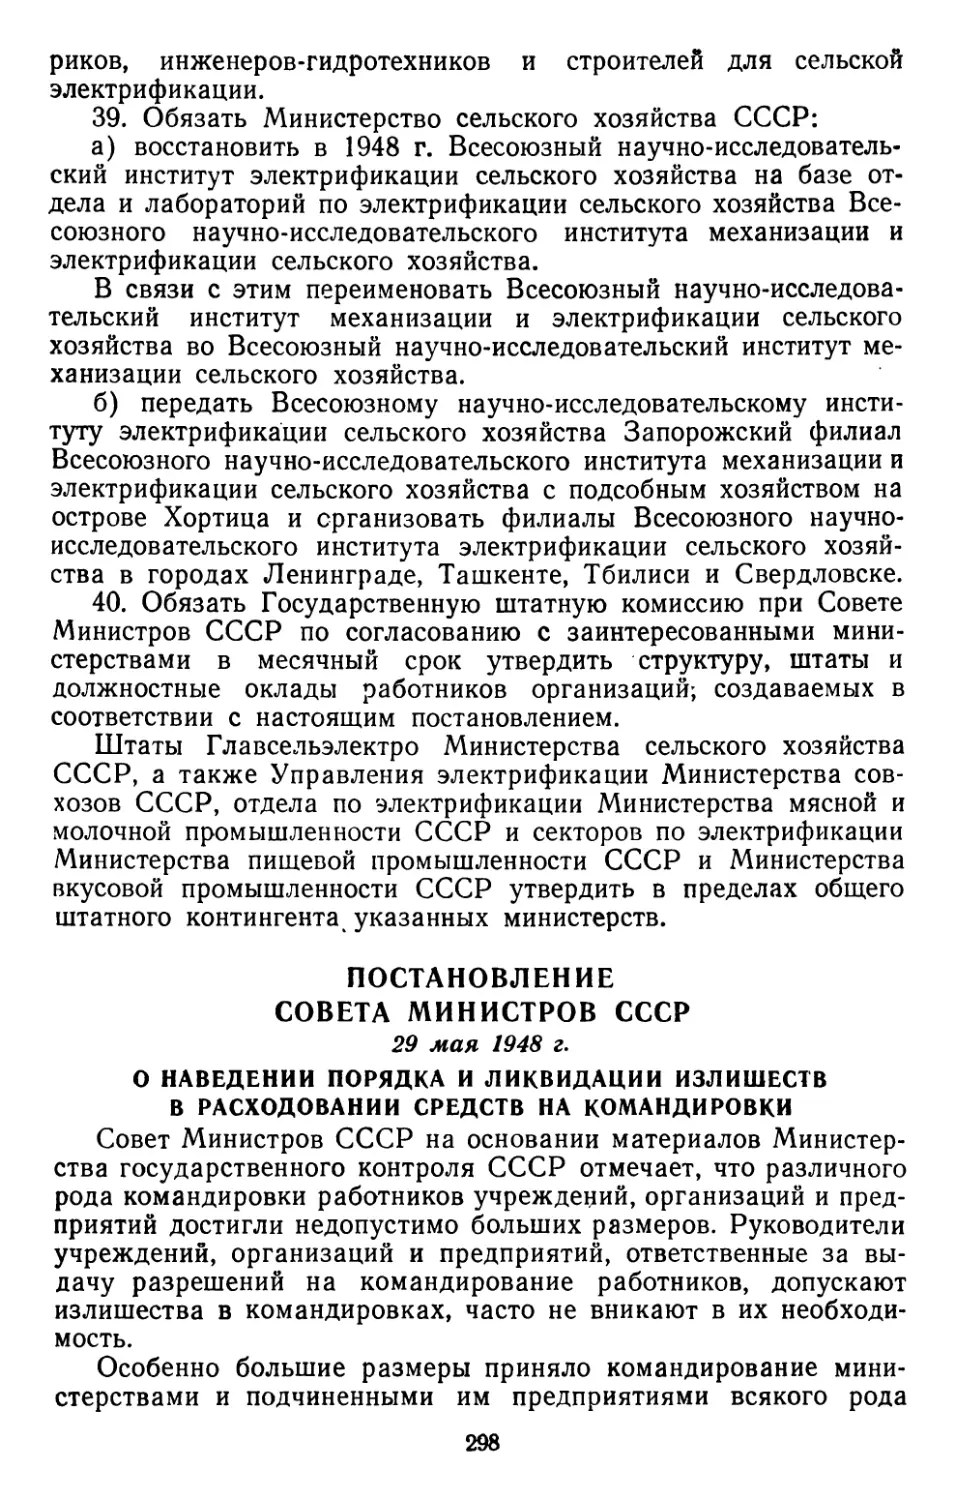 Постановление Совета Министров СССР, 29 мая 1948 г. О наведении порядка и ликвидации излишеств в расходовании средств на командировки